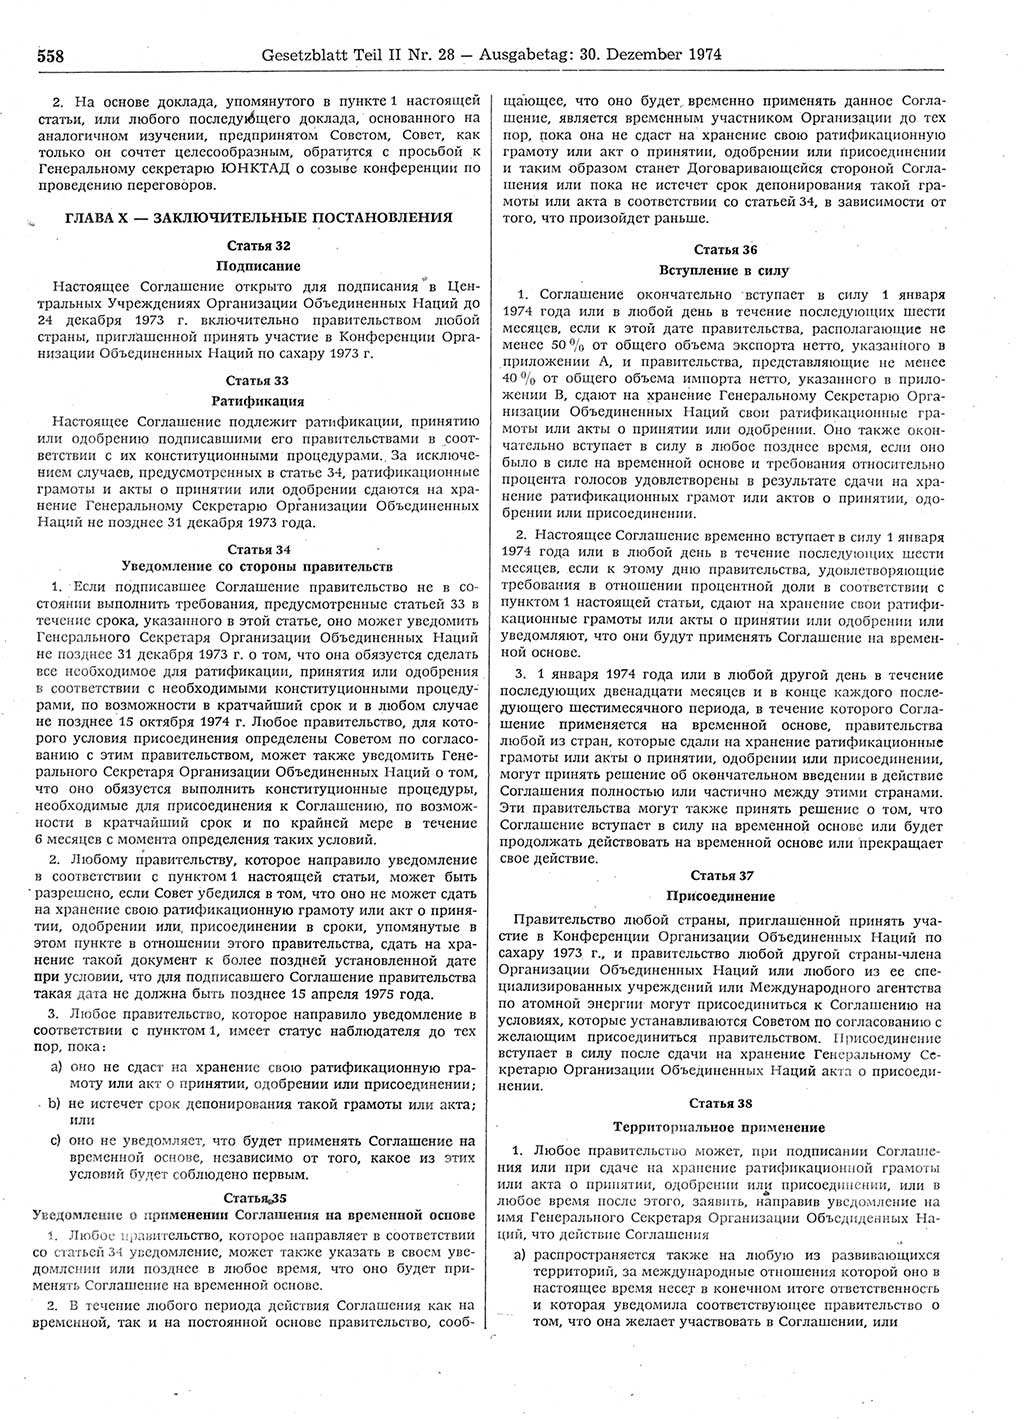 Gesetzblatt (GBl.) der Deutschen Demokratischen Republik (DDR) Teil ⅠⅠ 1974, Seite 558 (GBl. DDR ⅠⅠ 1974, S. 558)